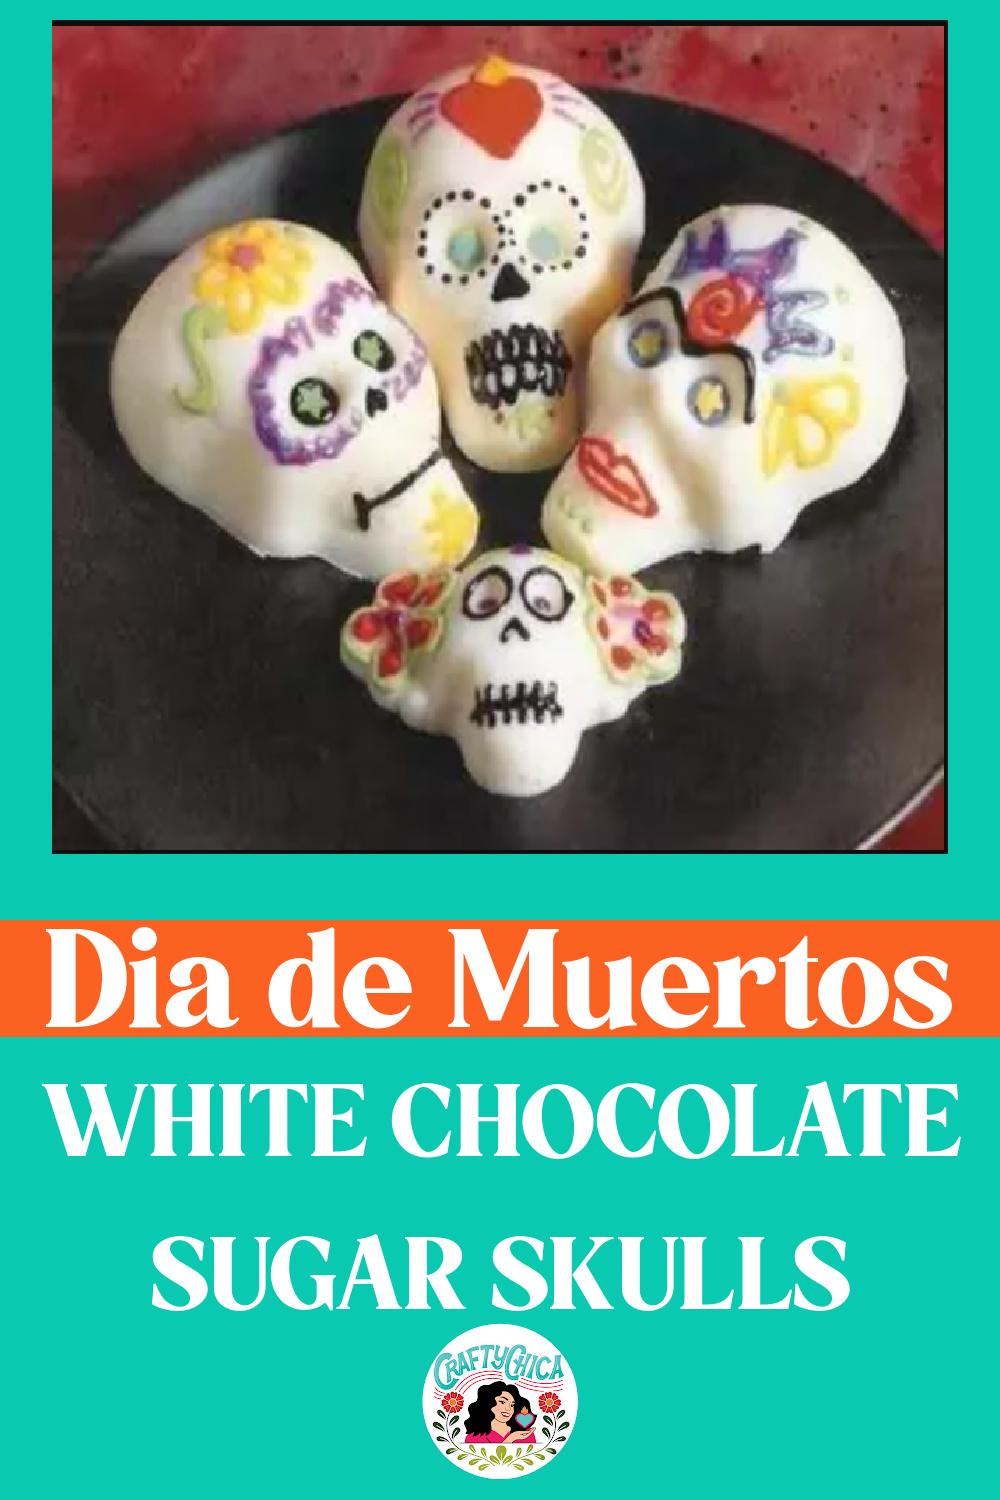 White chocolate sugar skulls